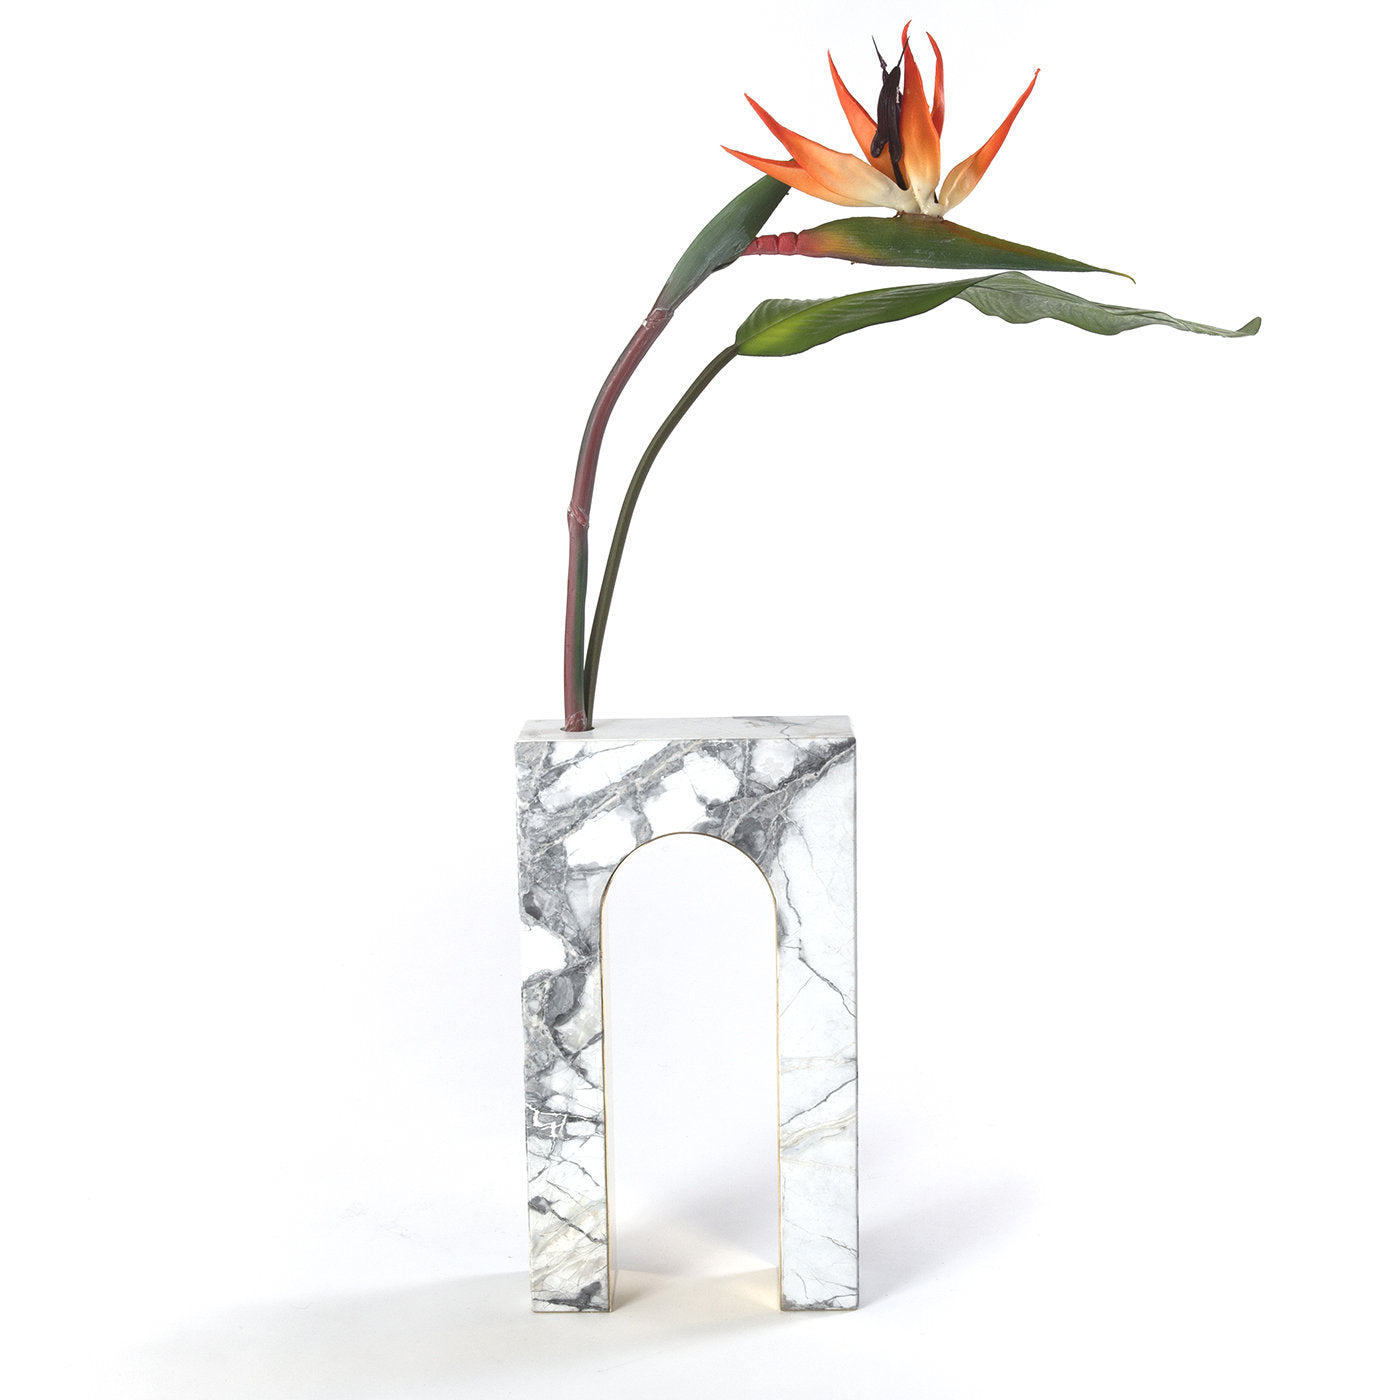 Architetture Domestiche Marble Vase #1 - Alternative view 2